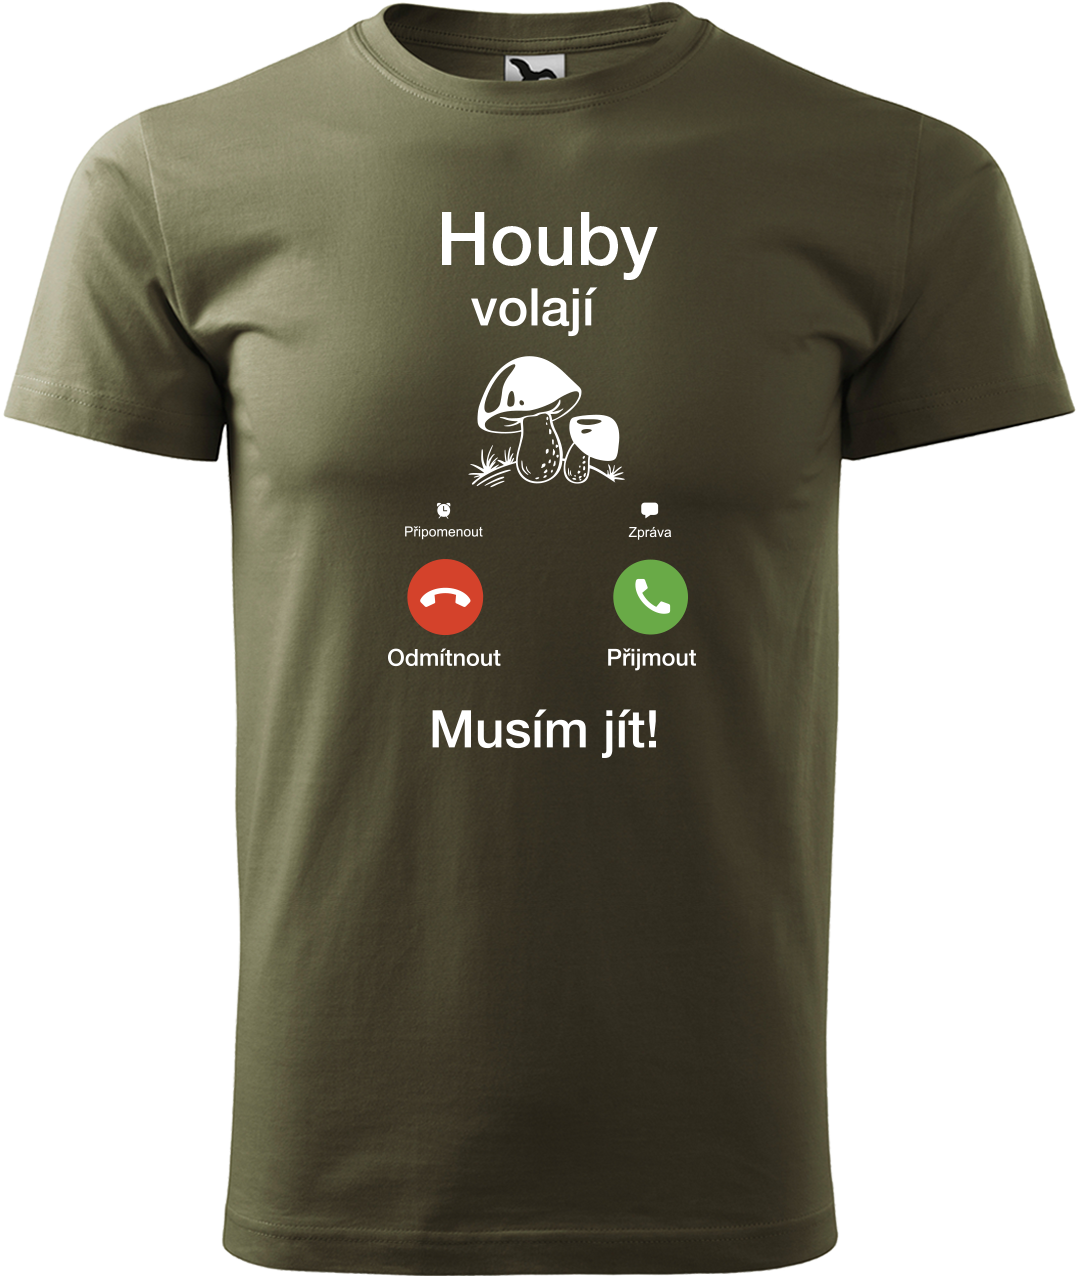 Pánské houbařské tričko - Houby volají Velikost: XL, Barva: Military (69)